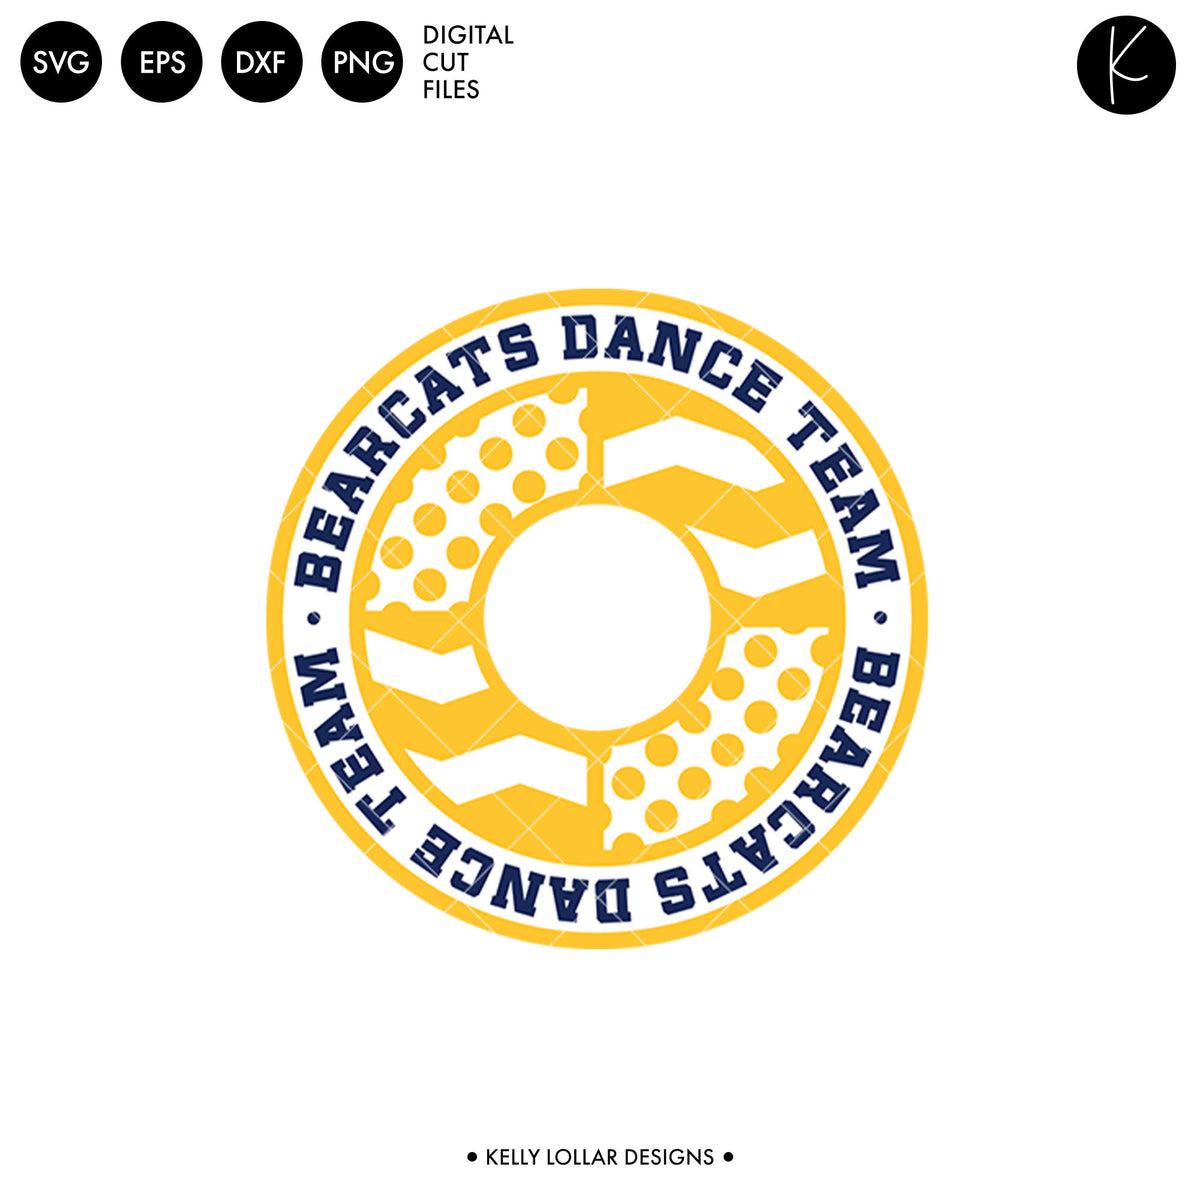 Bearcats Dance Bundle | SVG DXF EPS PNG Cut Files